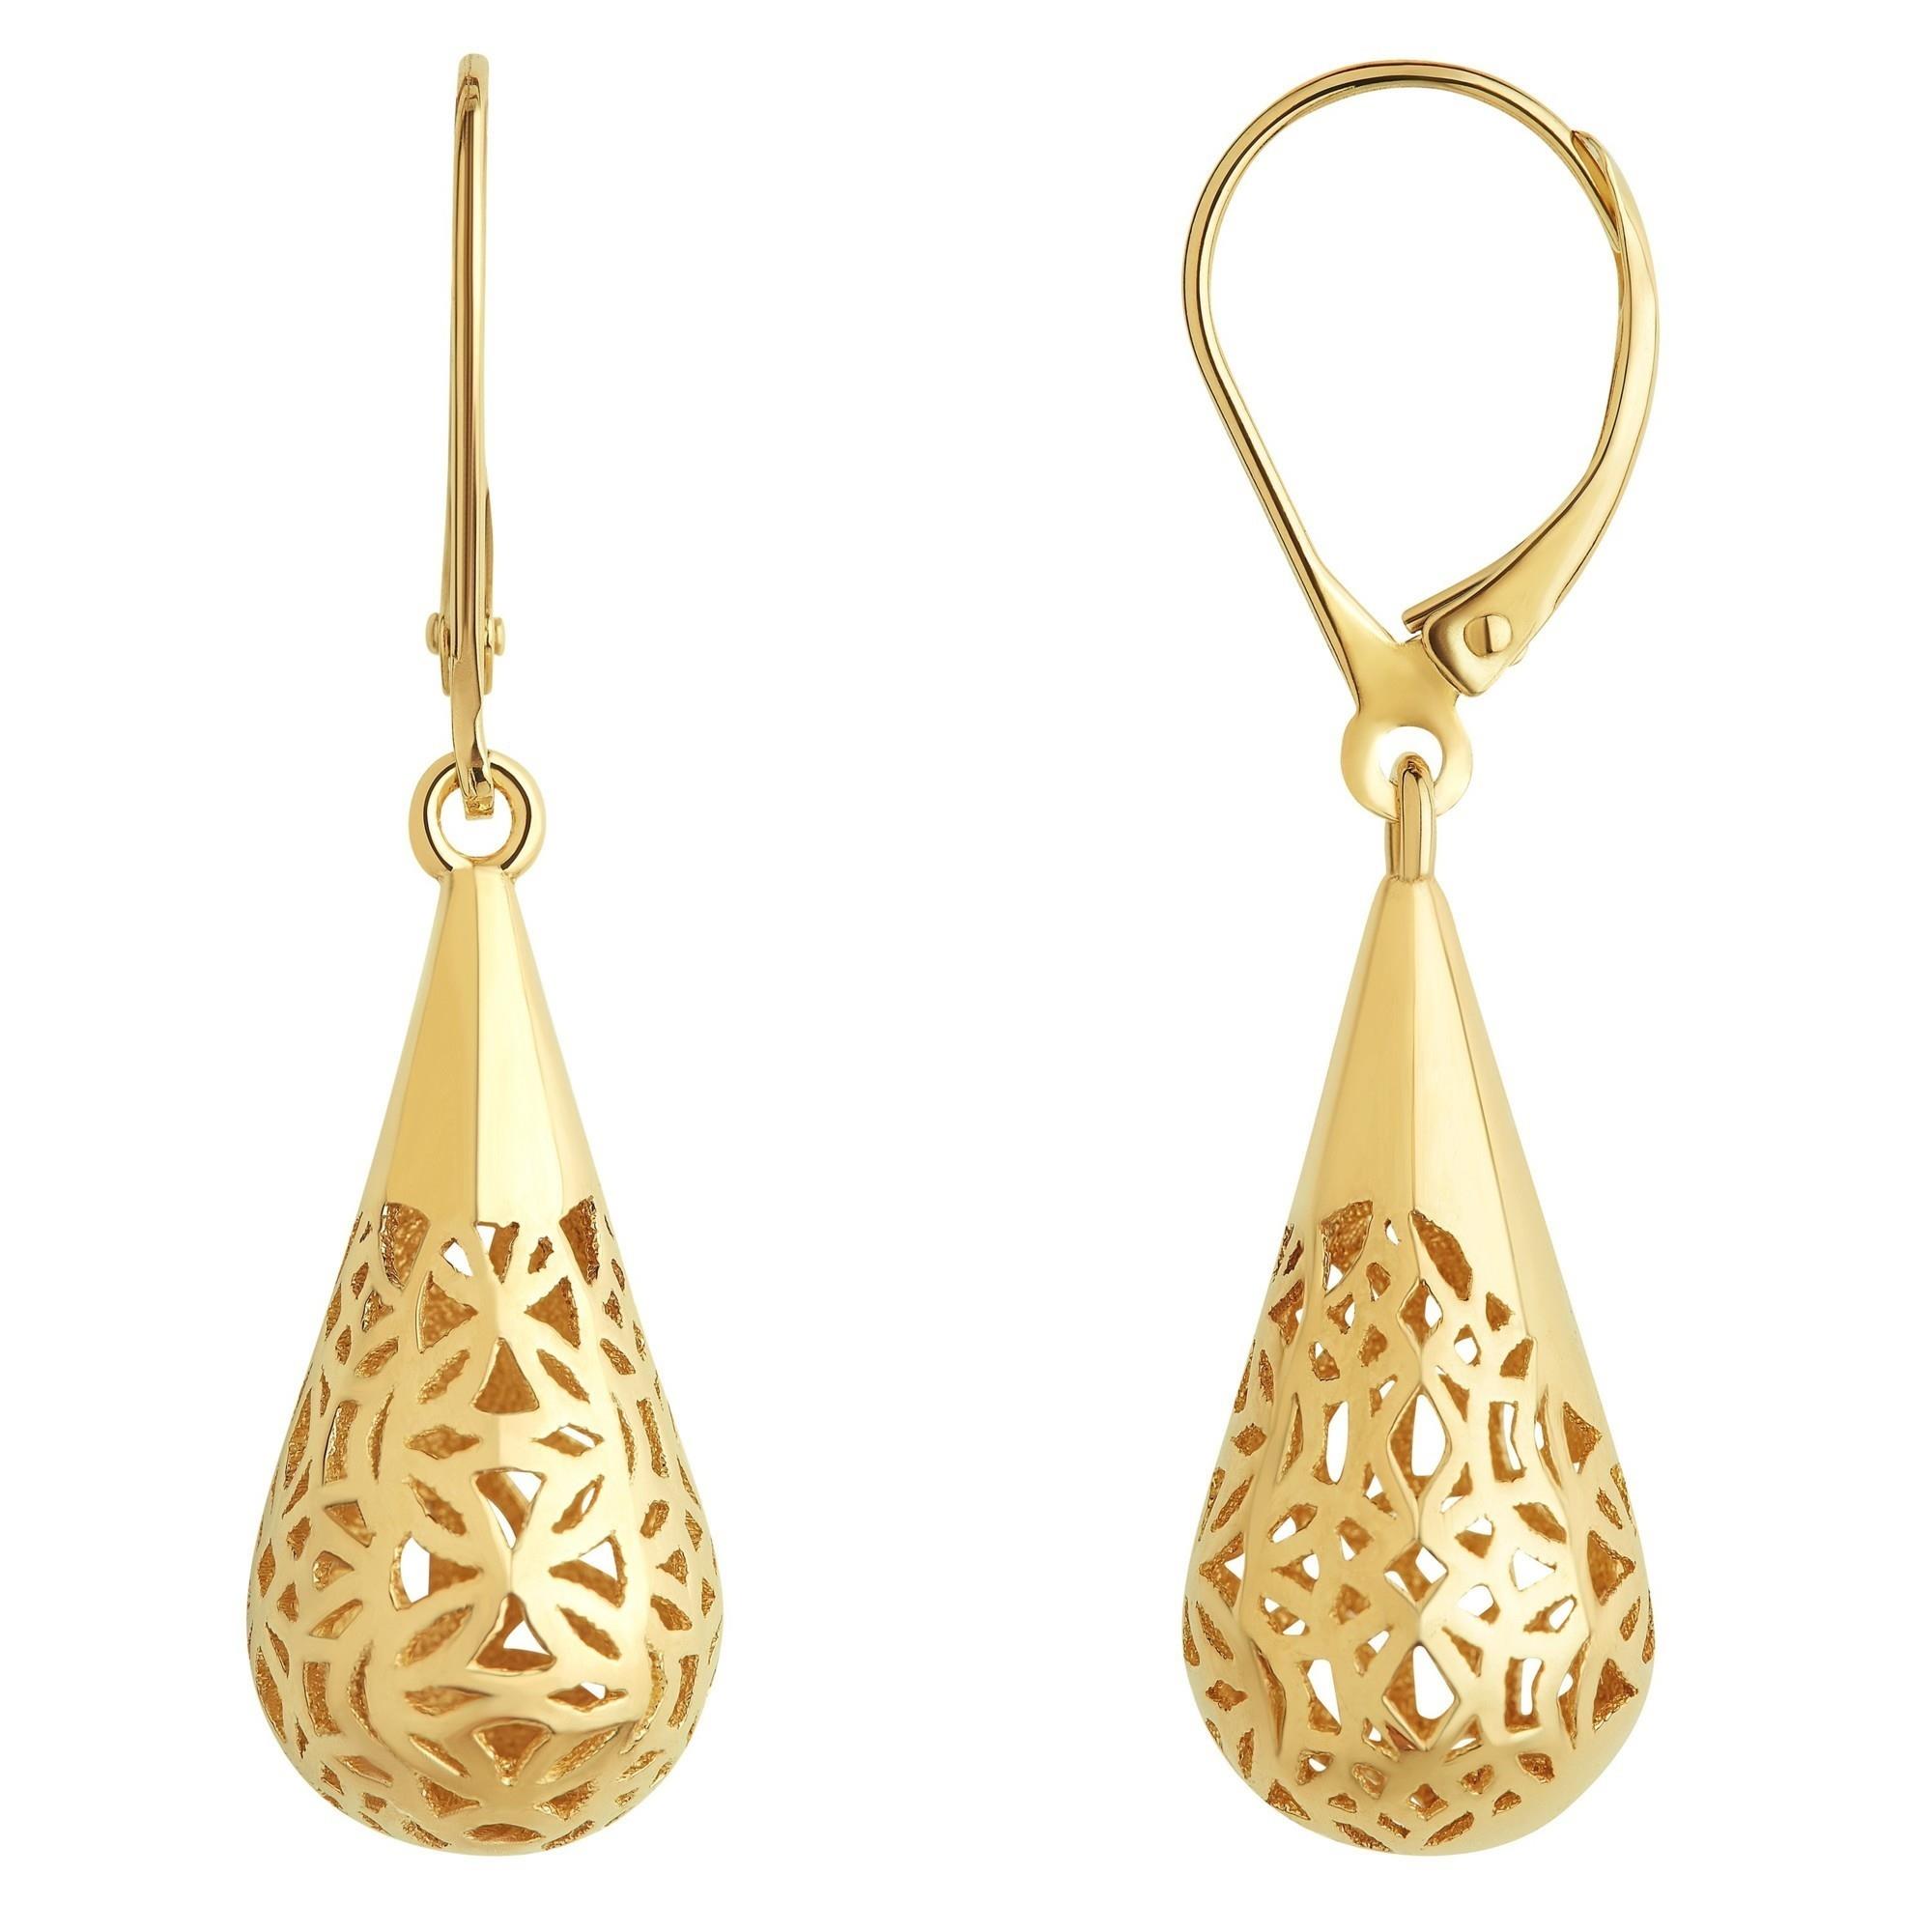 Details more than 152 gold earrings teardrop best - seven.edu.vn